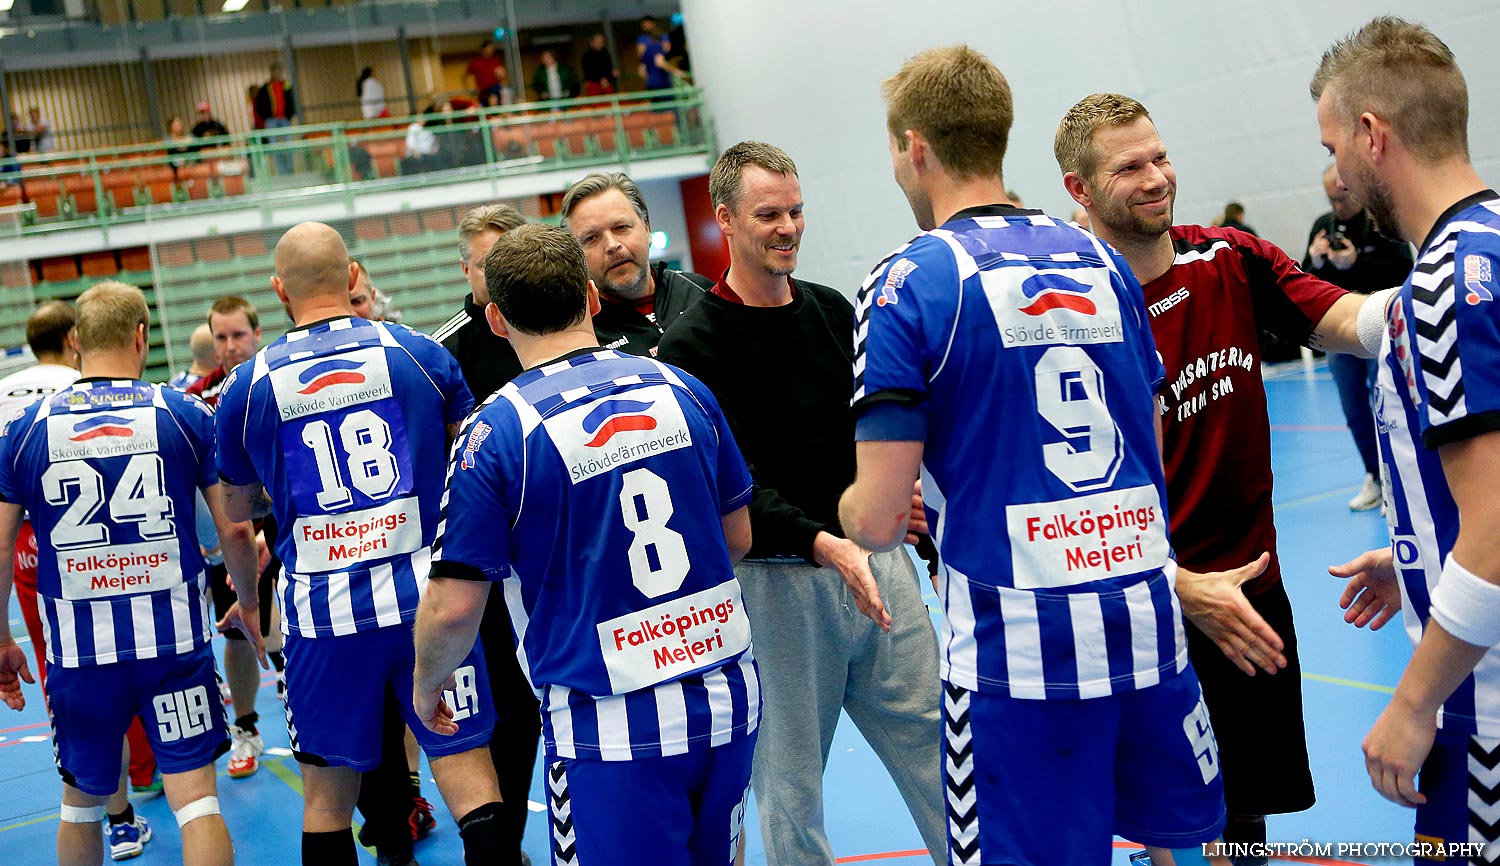 Trim-SM Herrar IFK Skövde HK-GIK Wasaiterna,herr,Arena Skövde,Skövde,Sverige,Handboll,,2014,87401